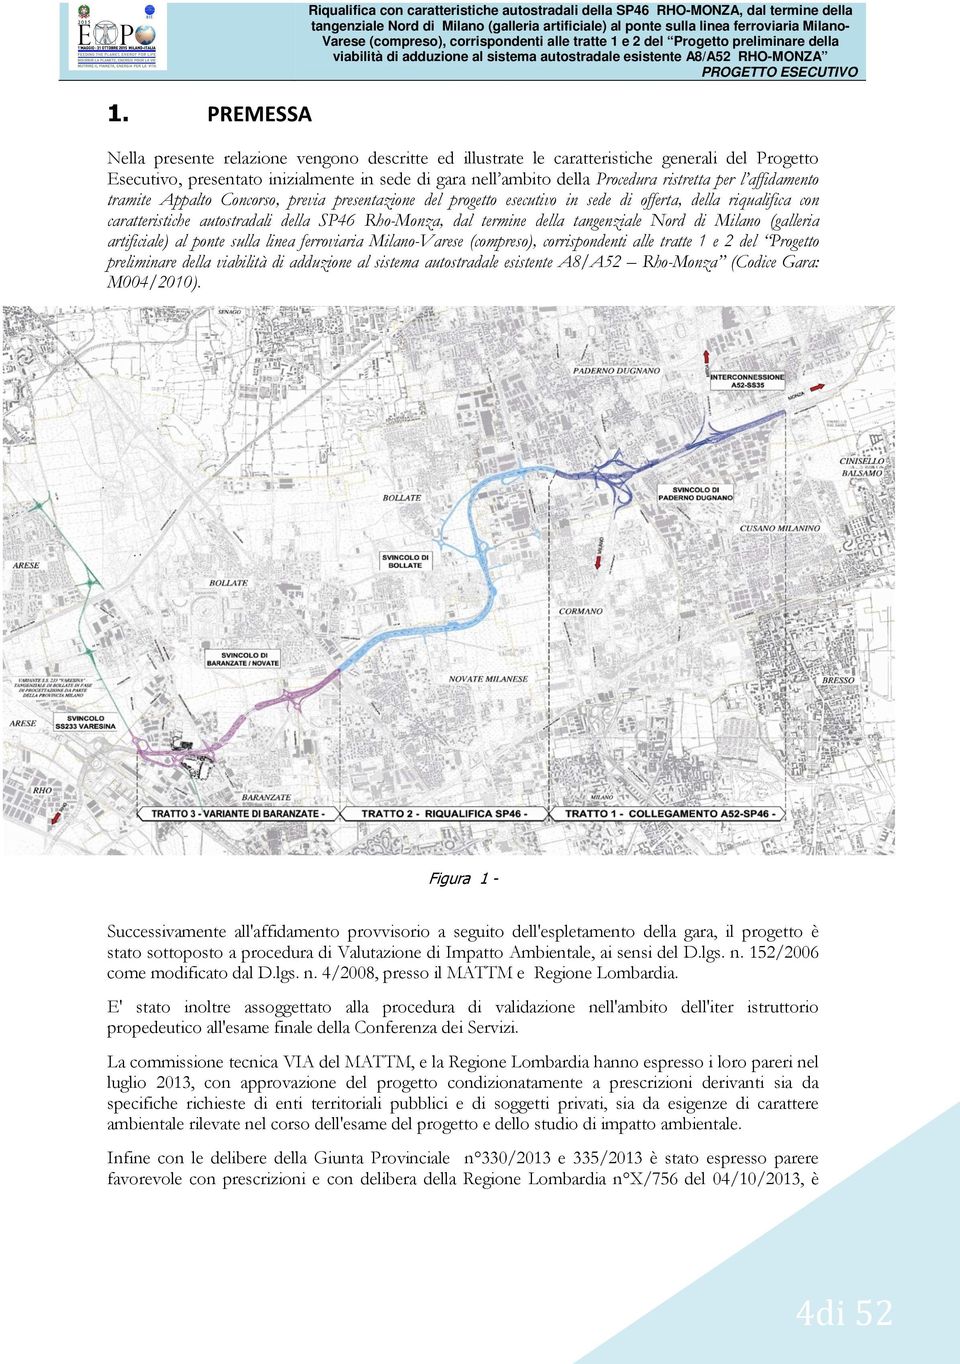 l affidamento tramite Appalto Concorso, previa presentazione del progetto esecutivo in sede di offerta, della riqualifica con caratteristiche autostradali della SP46 Rho-Monza, dal termine della